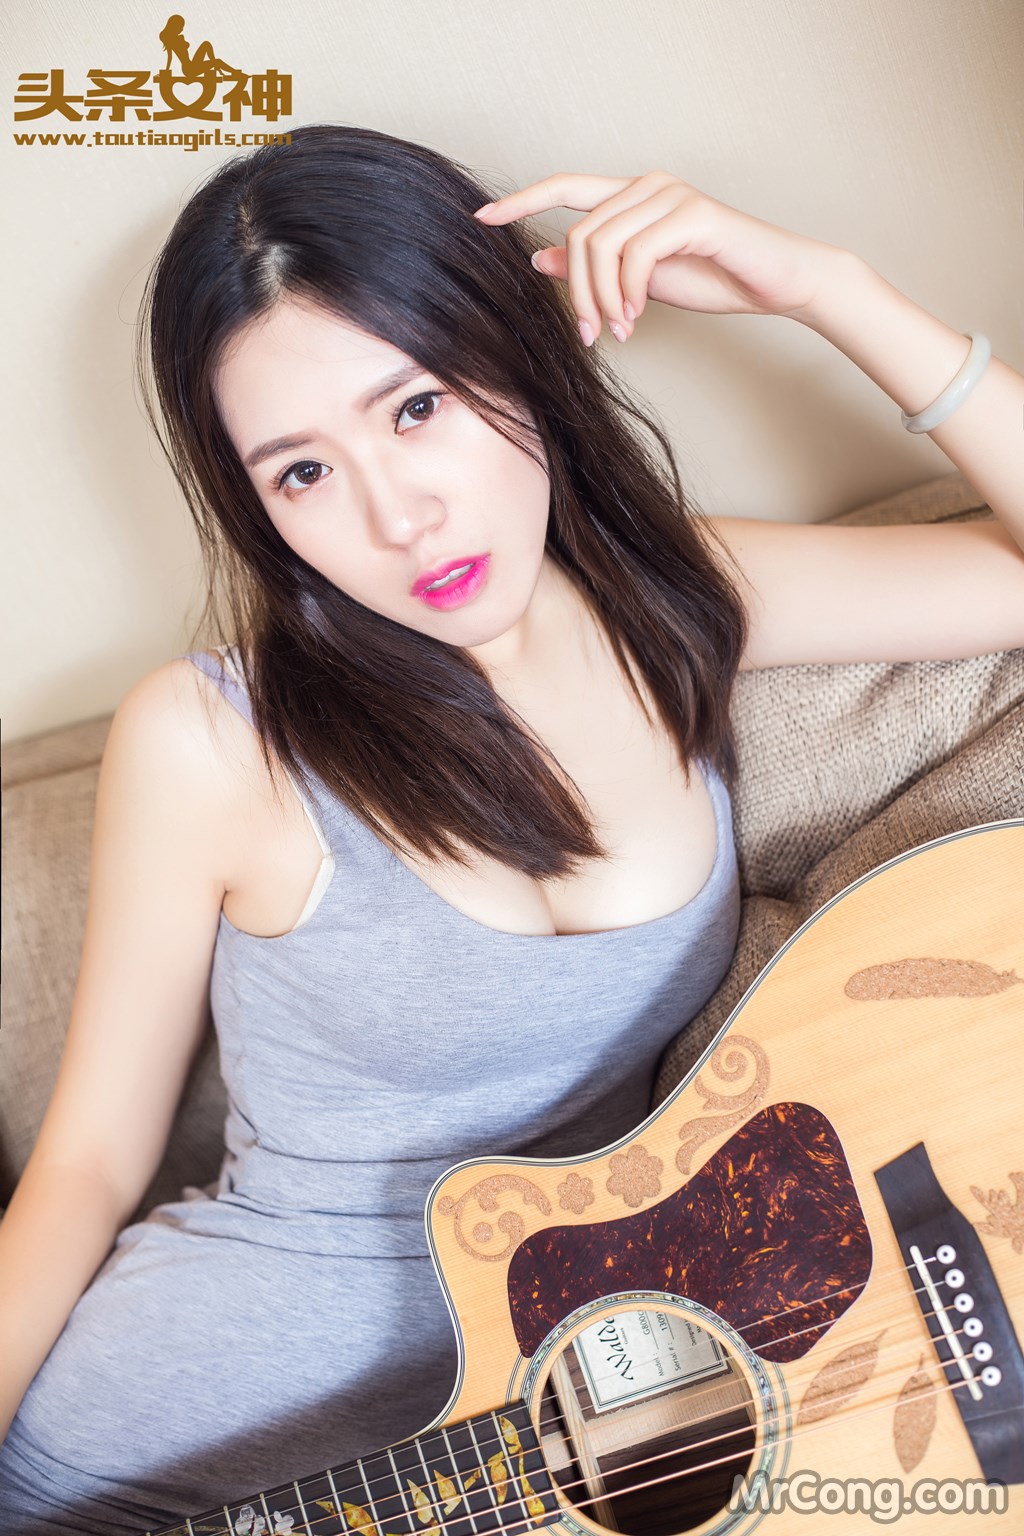 TouTiao 2016-08-05: Model Xiao Xi (筱 溪) (39 photos)